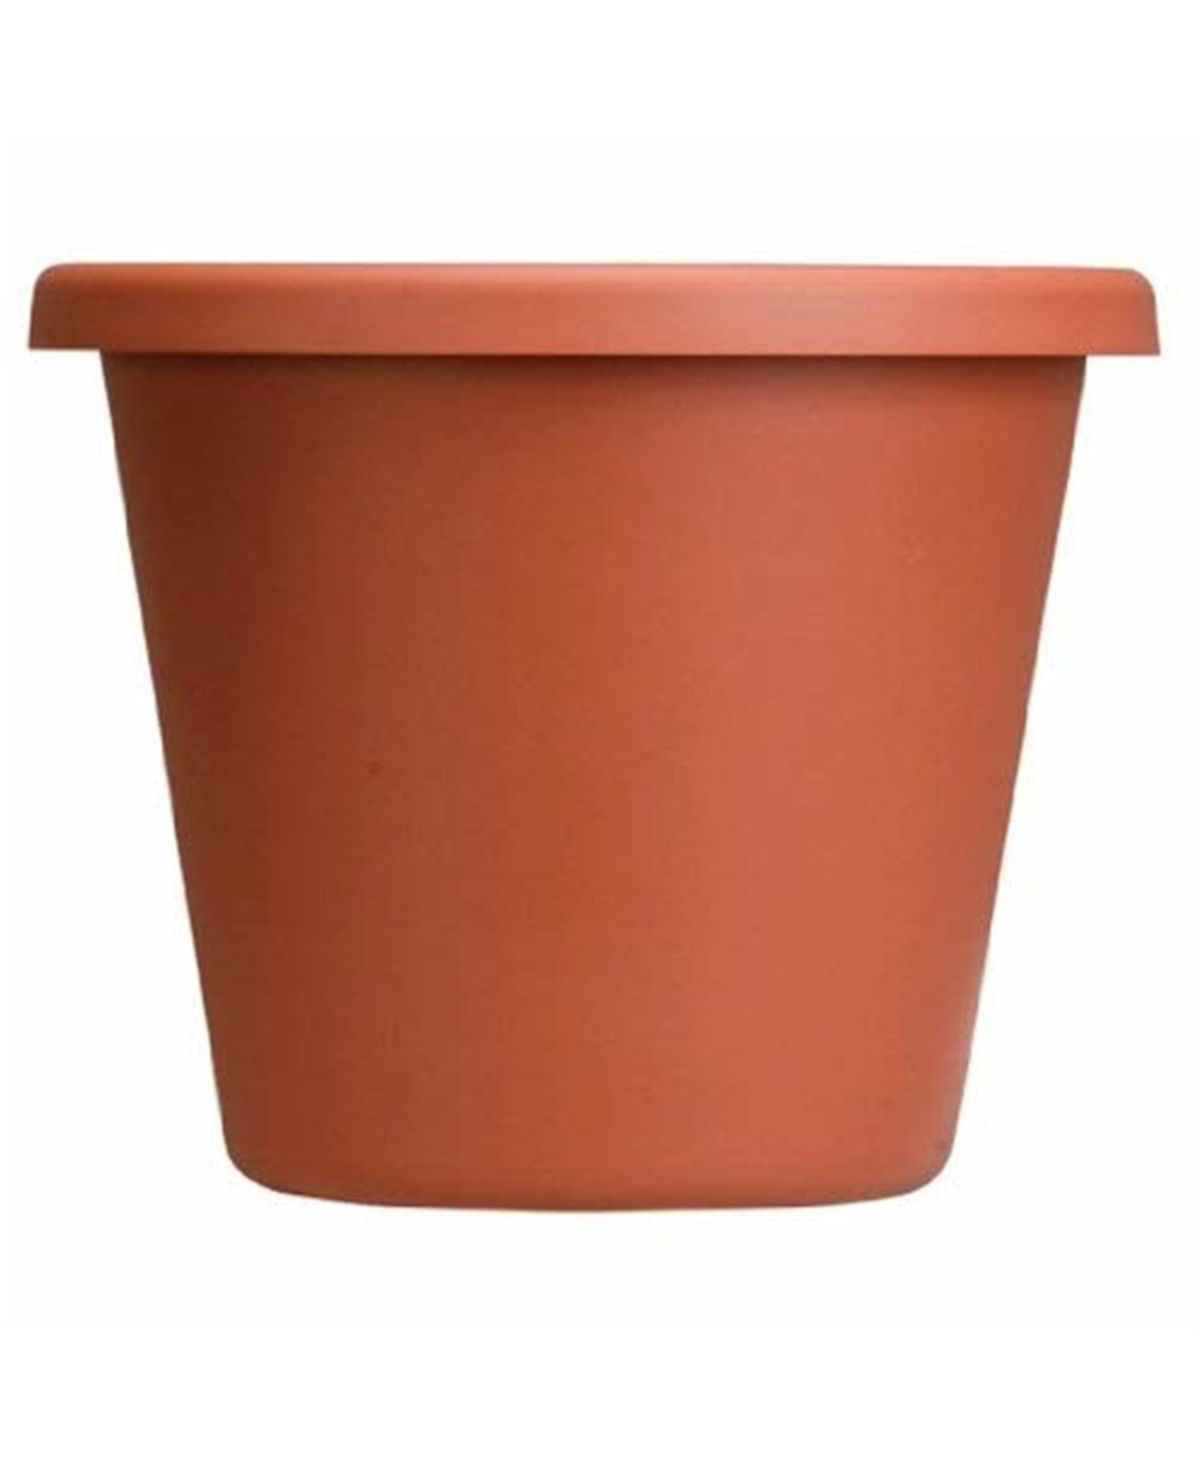 15346383 Akro Mils Plastic Classic Pot, Clay Color, 6-Inch sku 15346383